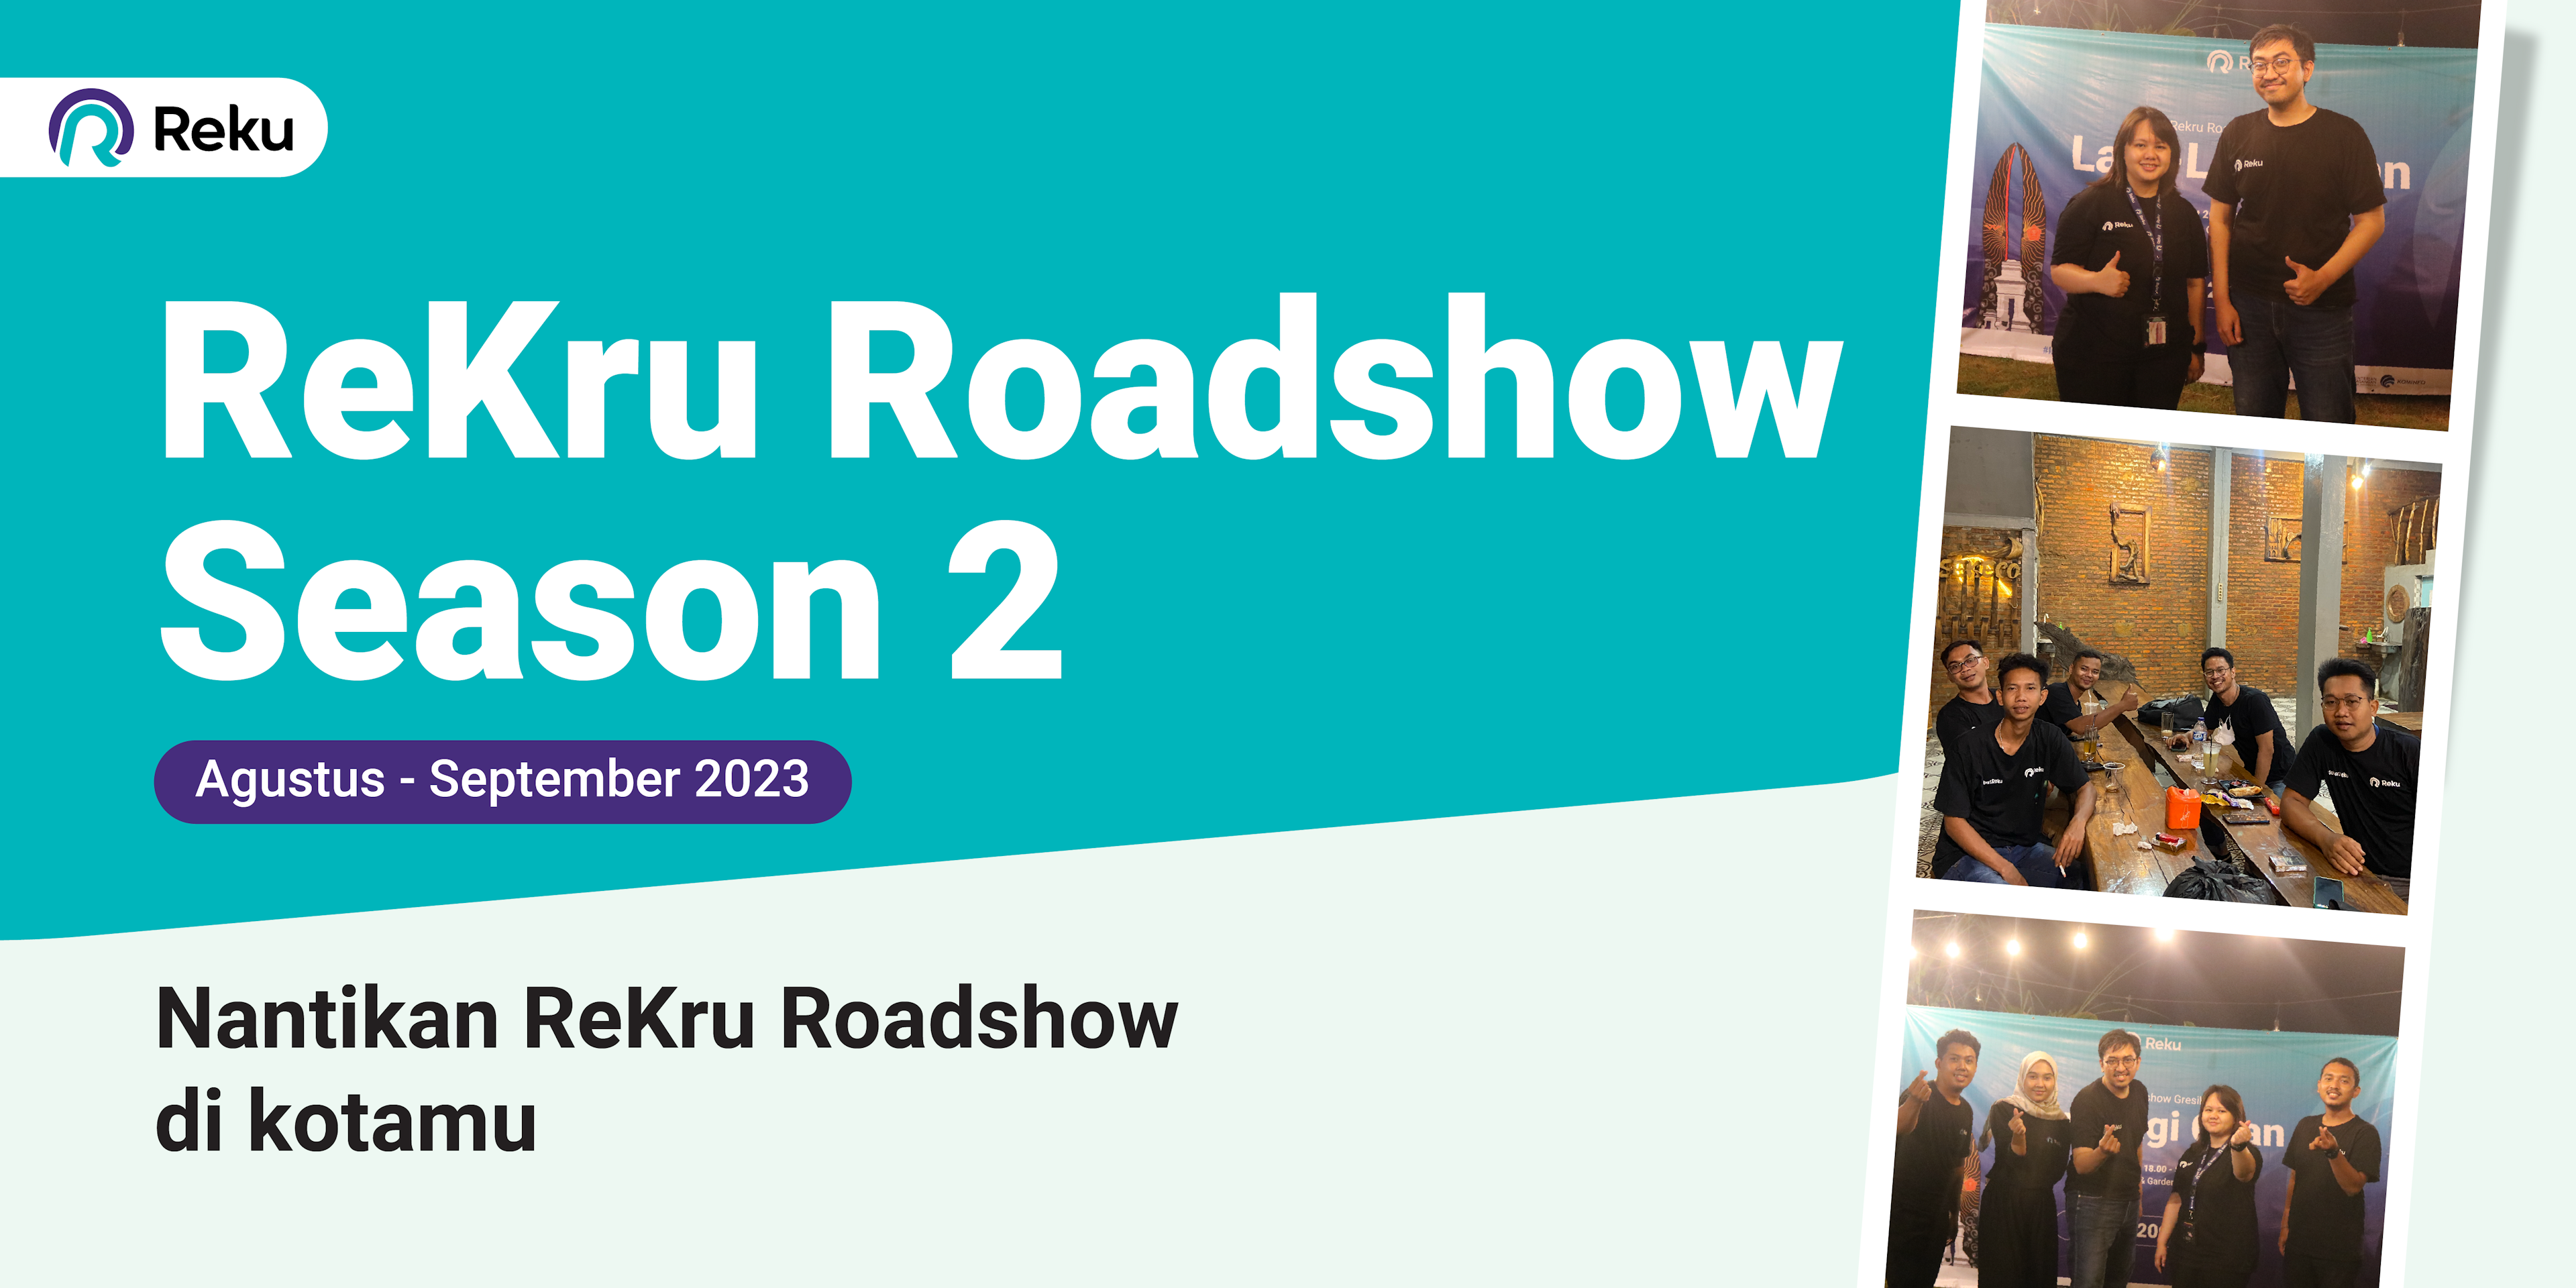 ReKru Roadshow Season 2 Akan Segera di Mulai! Catat Tanggalnya di Kotamu!